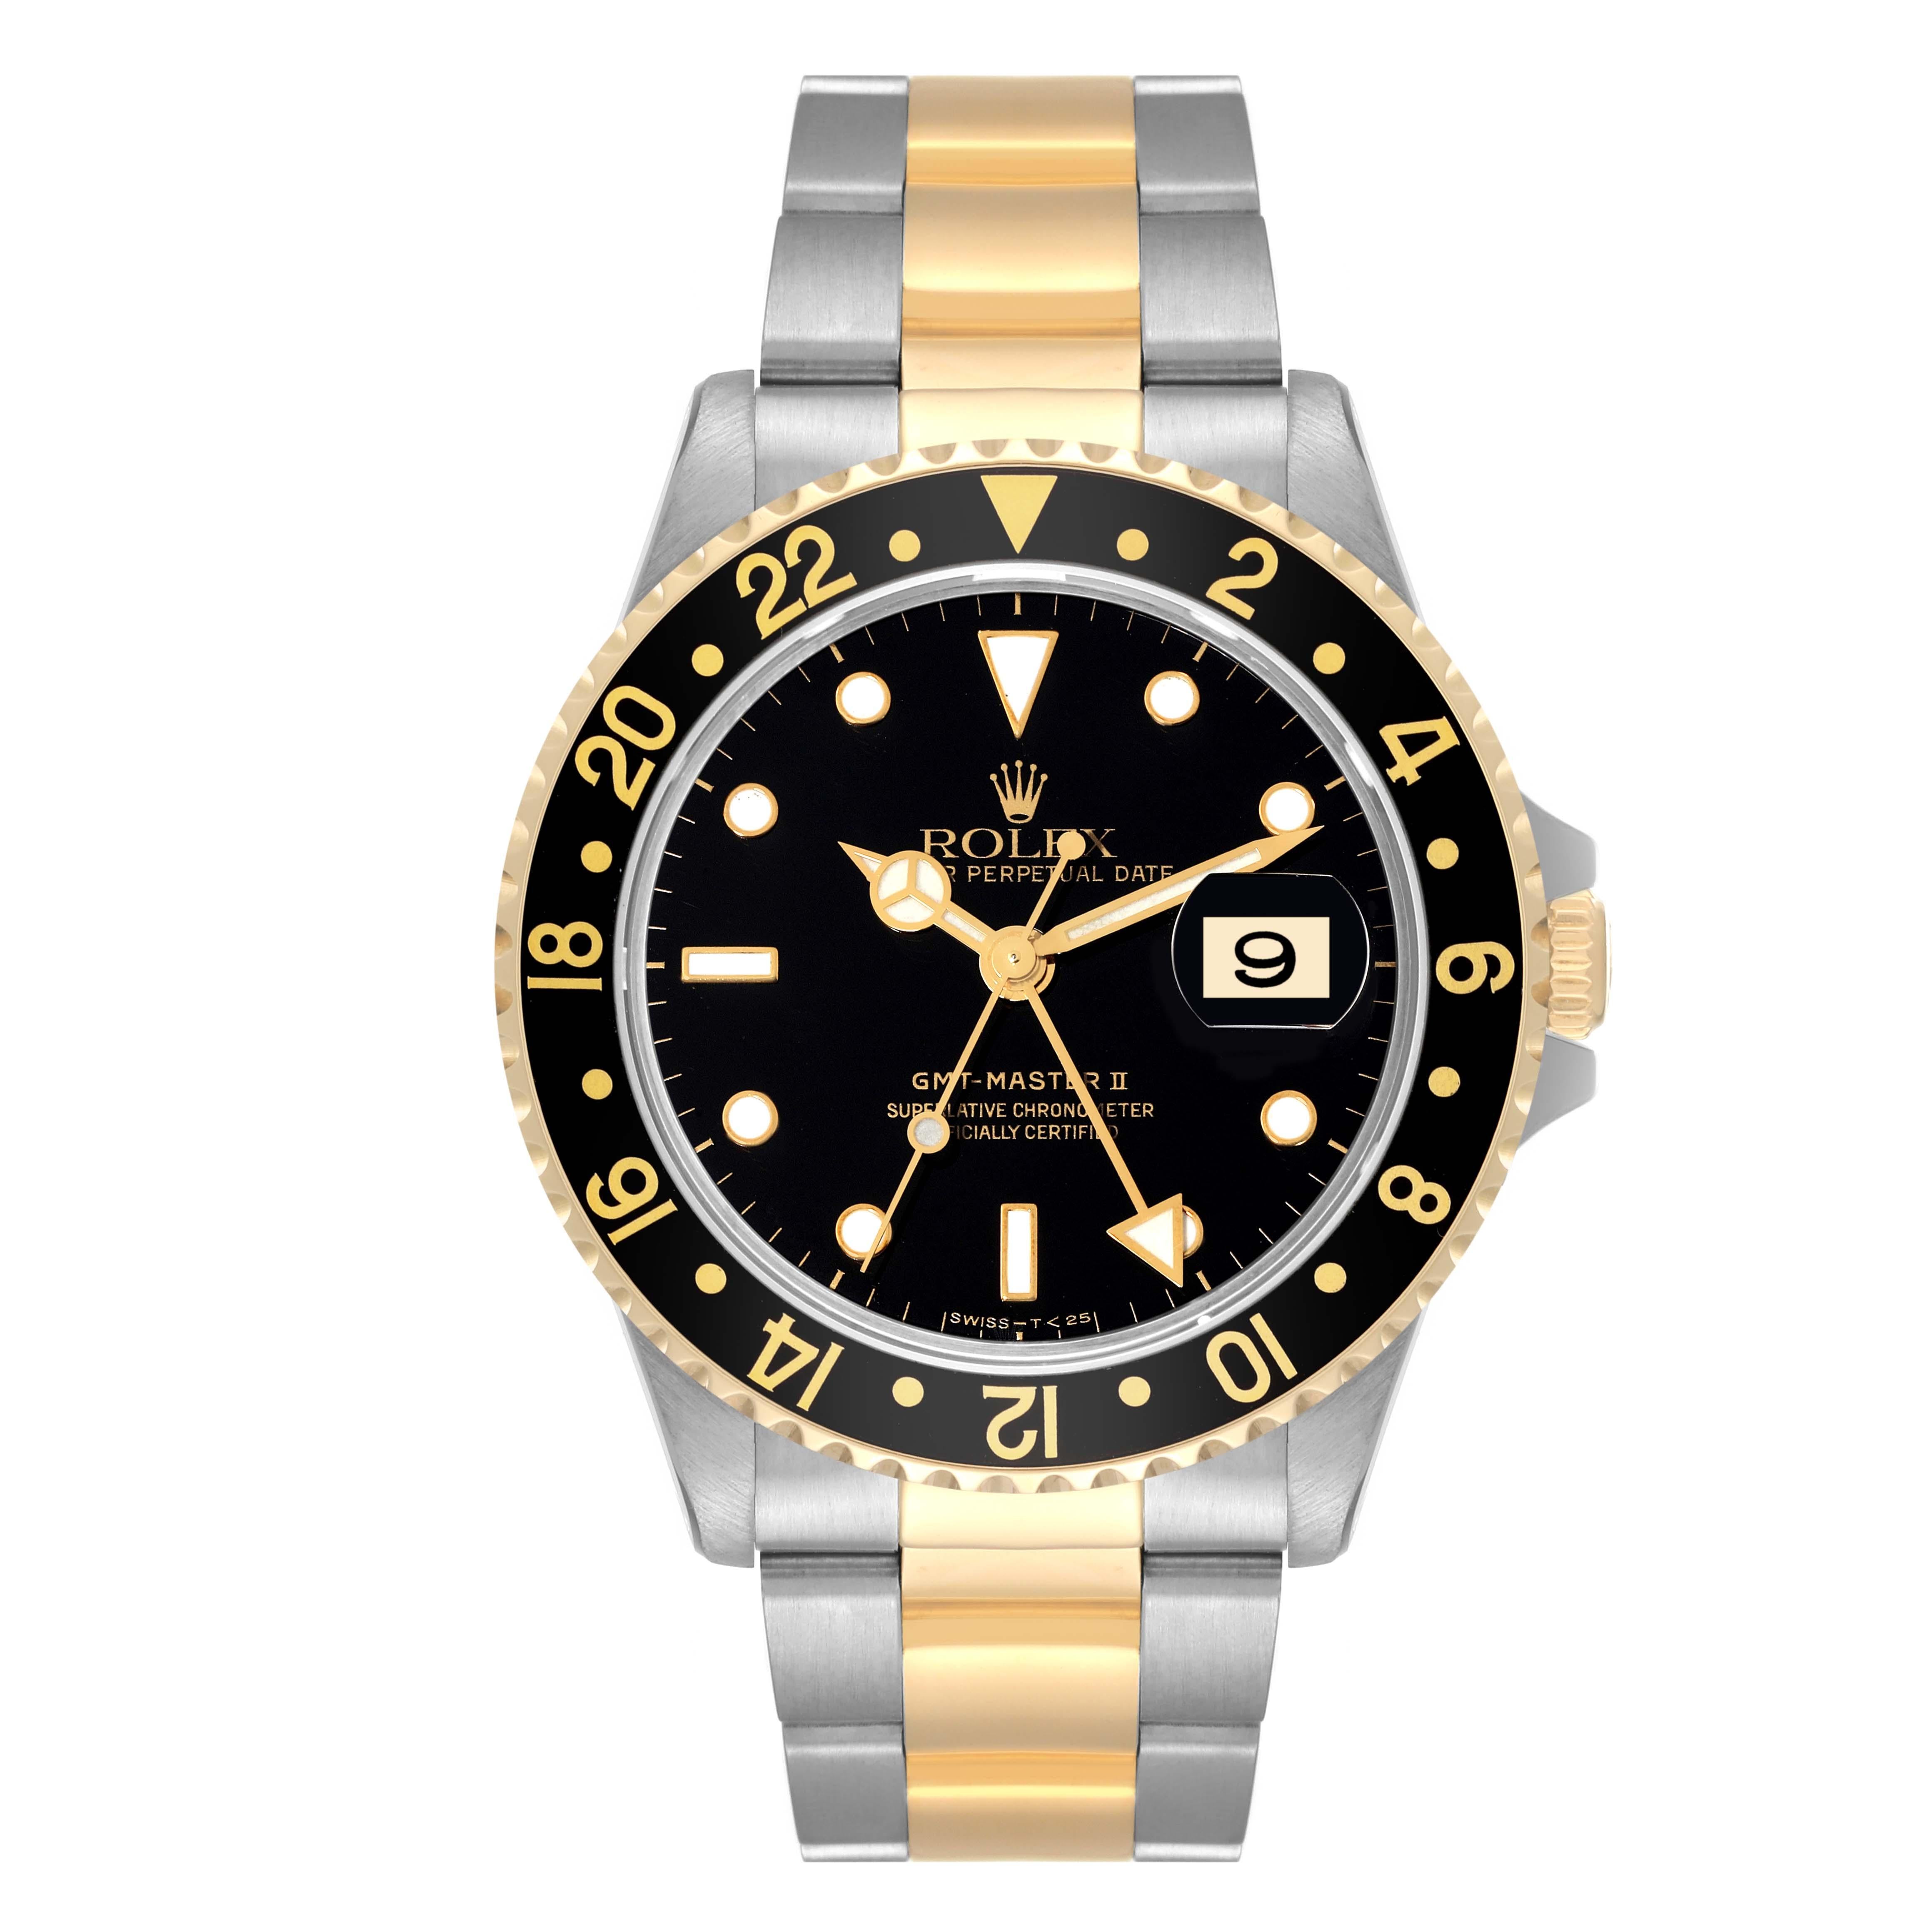 Rolex GMT Master II Yellow Gold Steel Oyster Bracelet Mens Watch 16713. Mouvement automatique à remontage automatique, officiellement certifié chronomètre. Boîtier en acier inoxydable de 40 mm de diamètre. Logo Rolex sur une couronne. Lunette